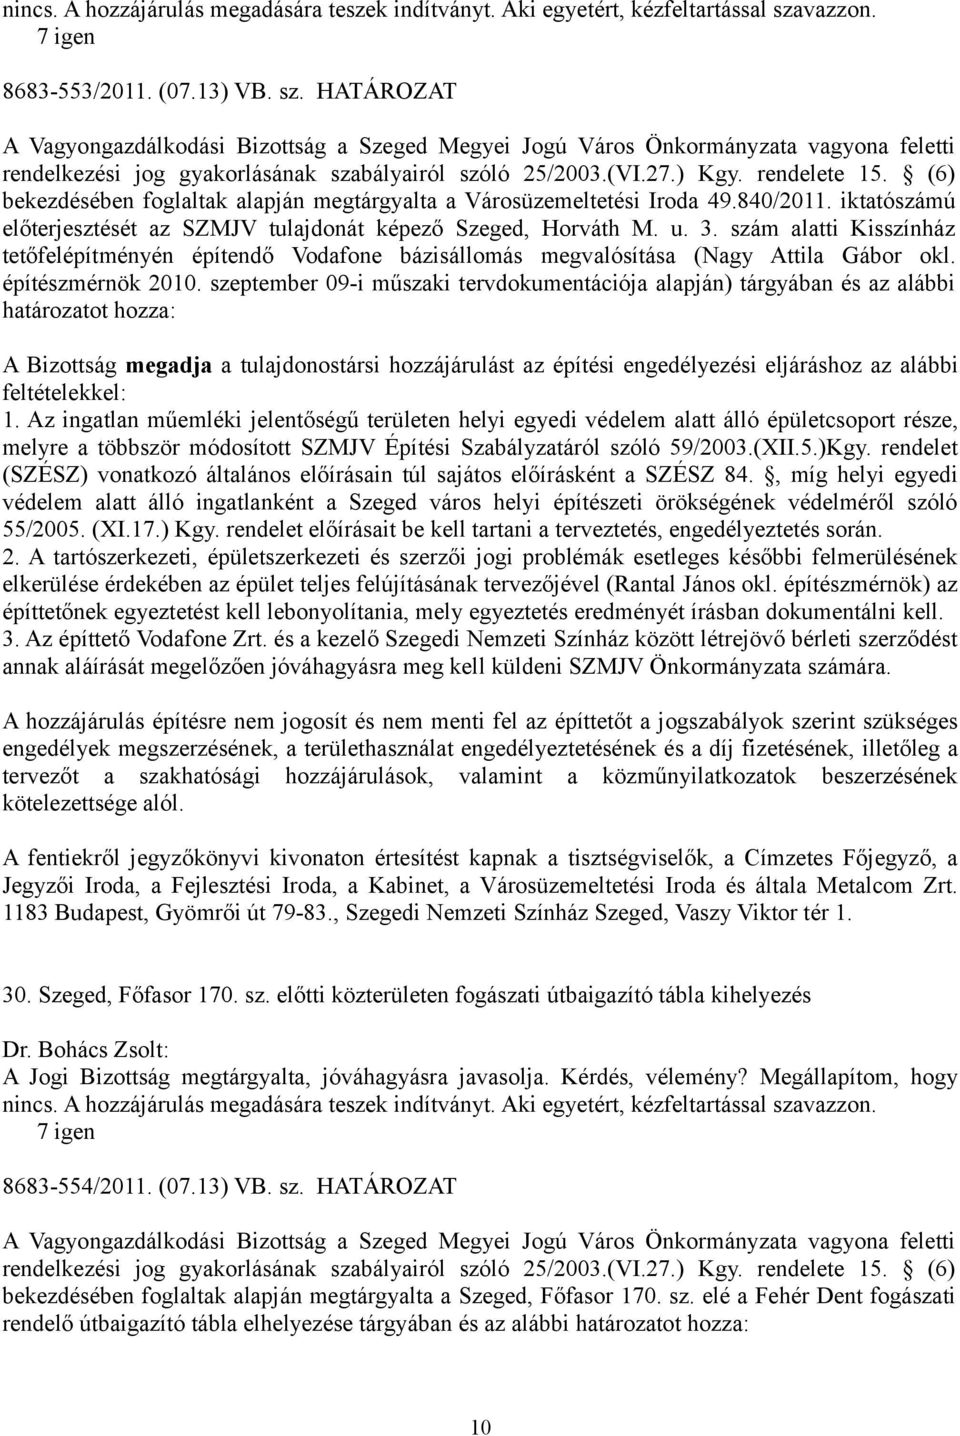 27.) Kgy. rendelete 15. (6) bekezdésében foglaltak alapján megtárgyalta a Városüzemeltetési Iroda 49.840/2011. iktatószámú előterjesztését az SZMJV tulajdonát képező Szeged, Horváth M. u. 3.